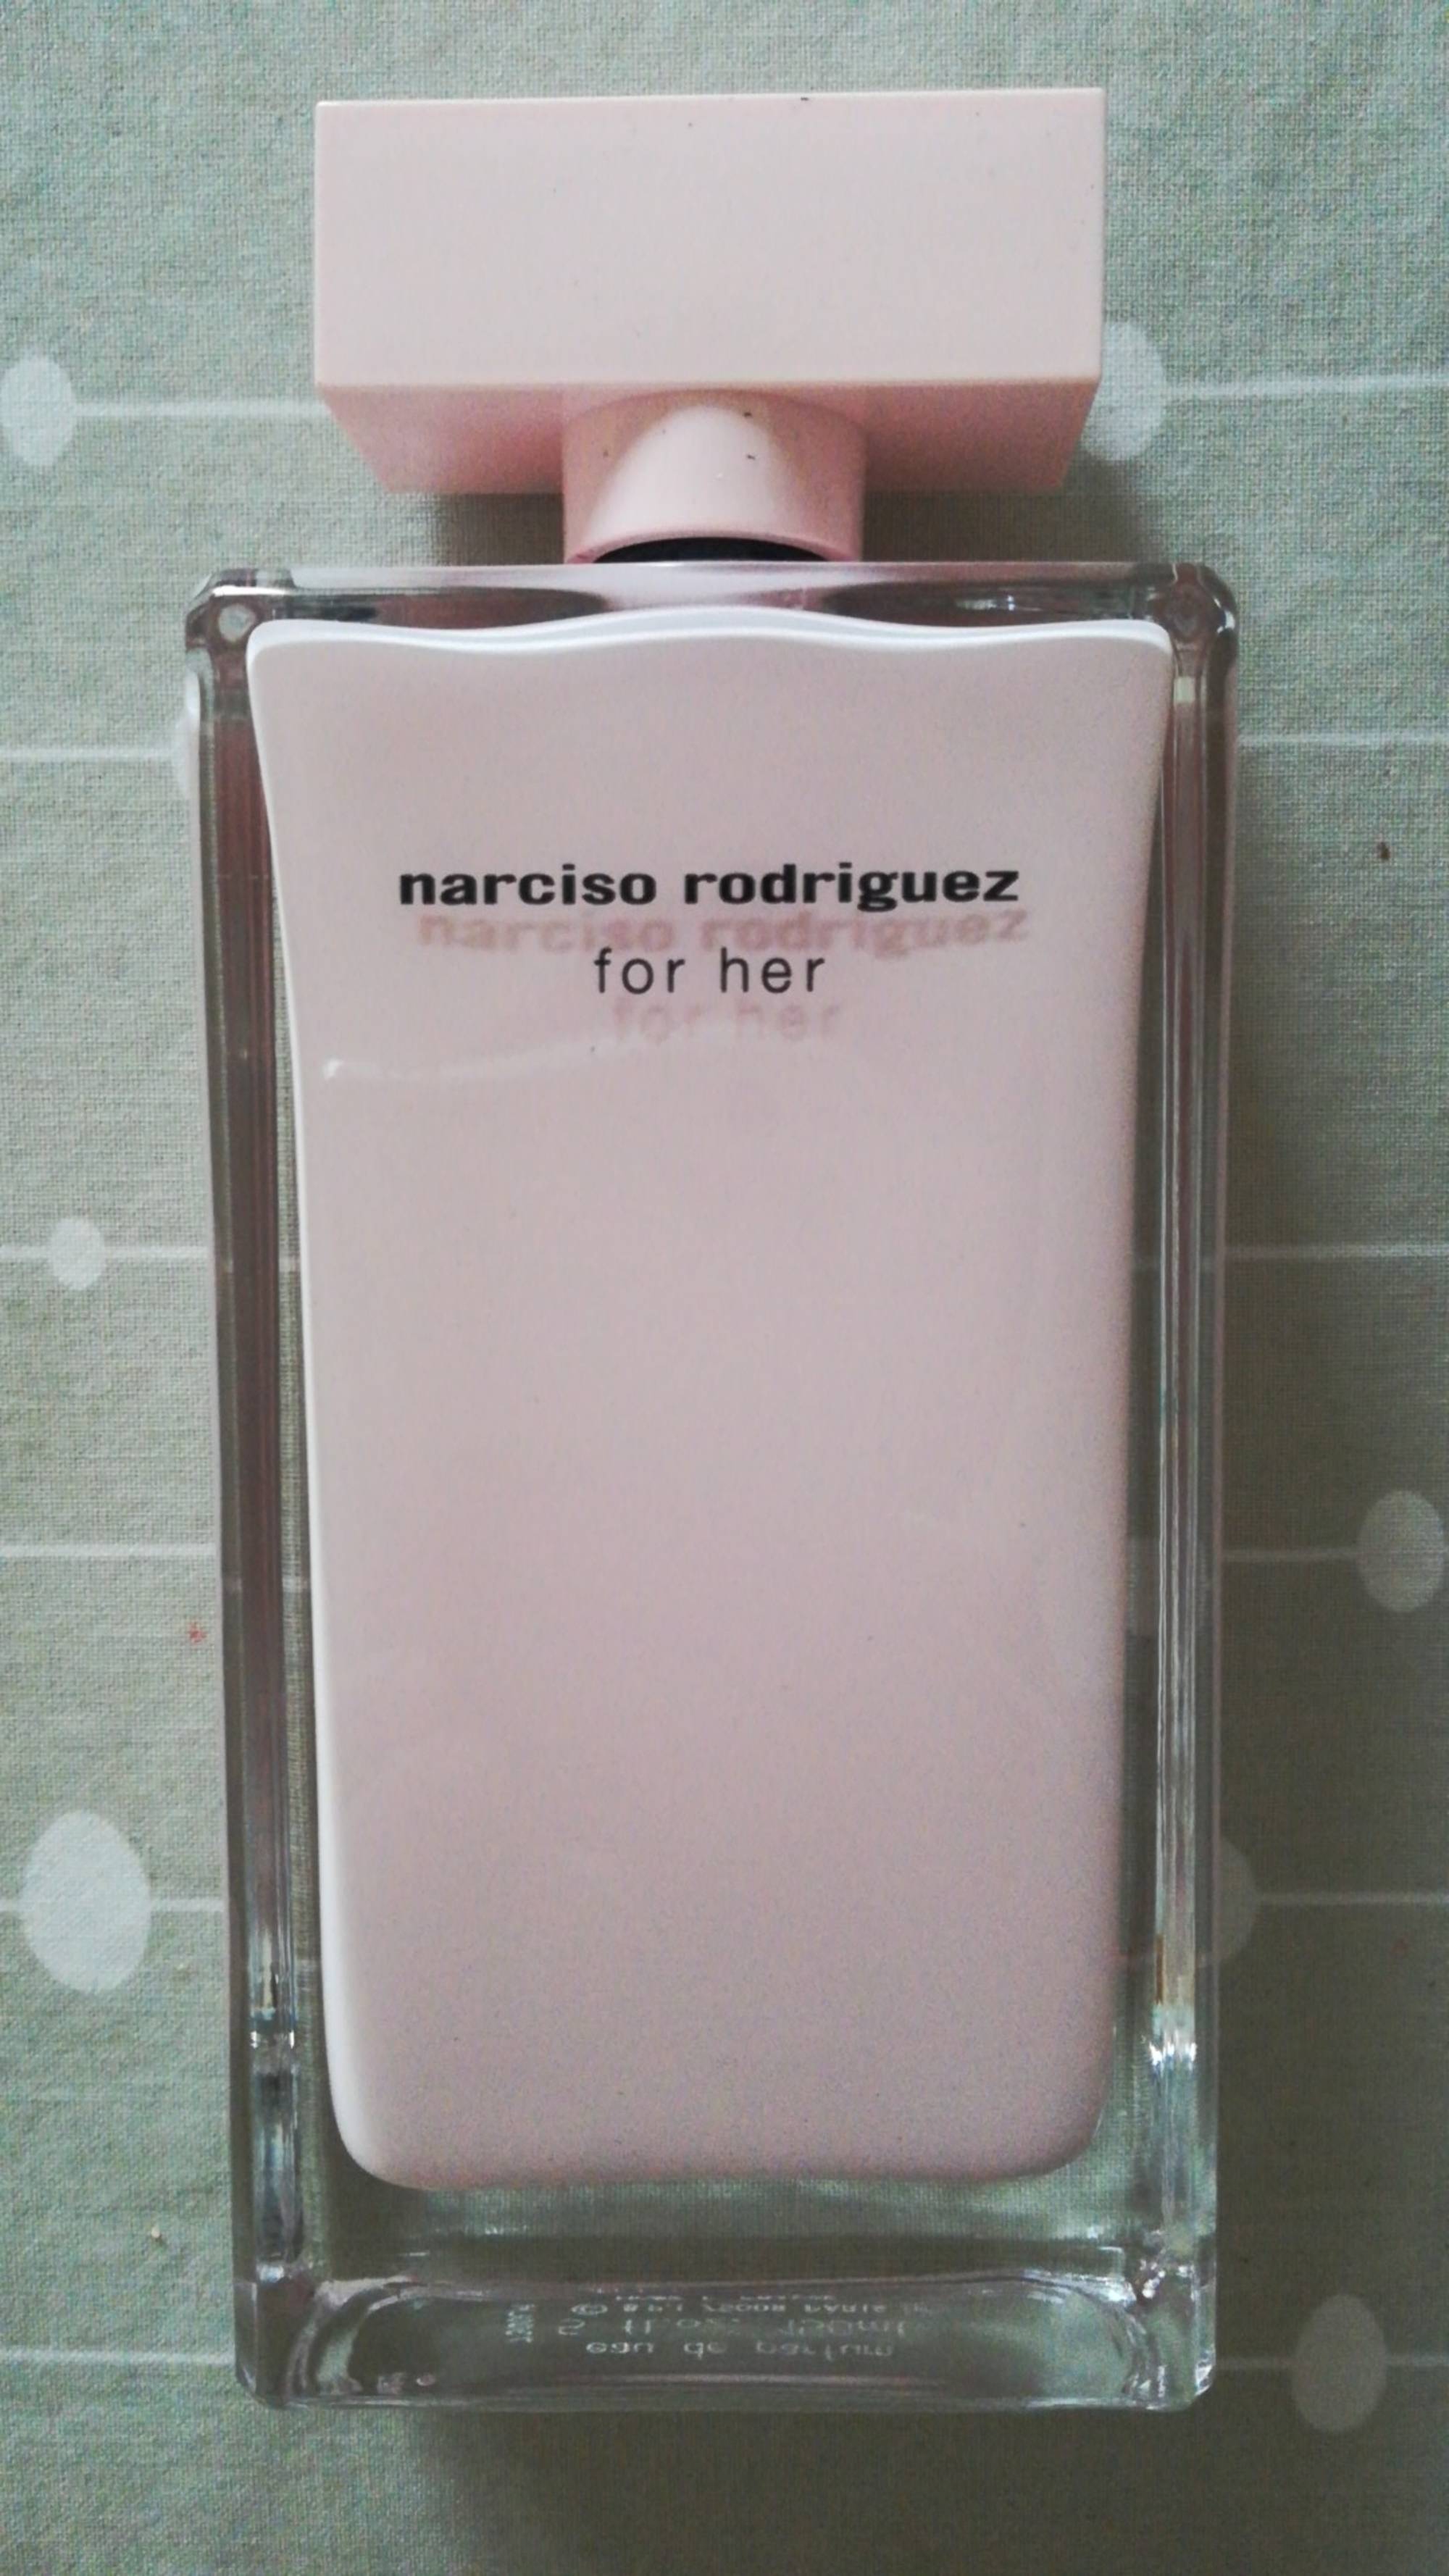 NARCISO RODRIGUEZ - For her - Eau de parfum